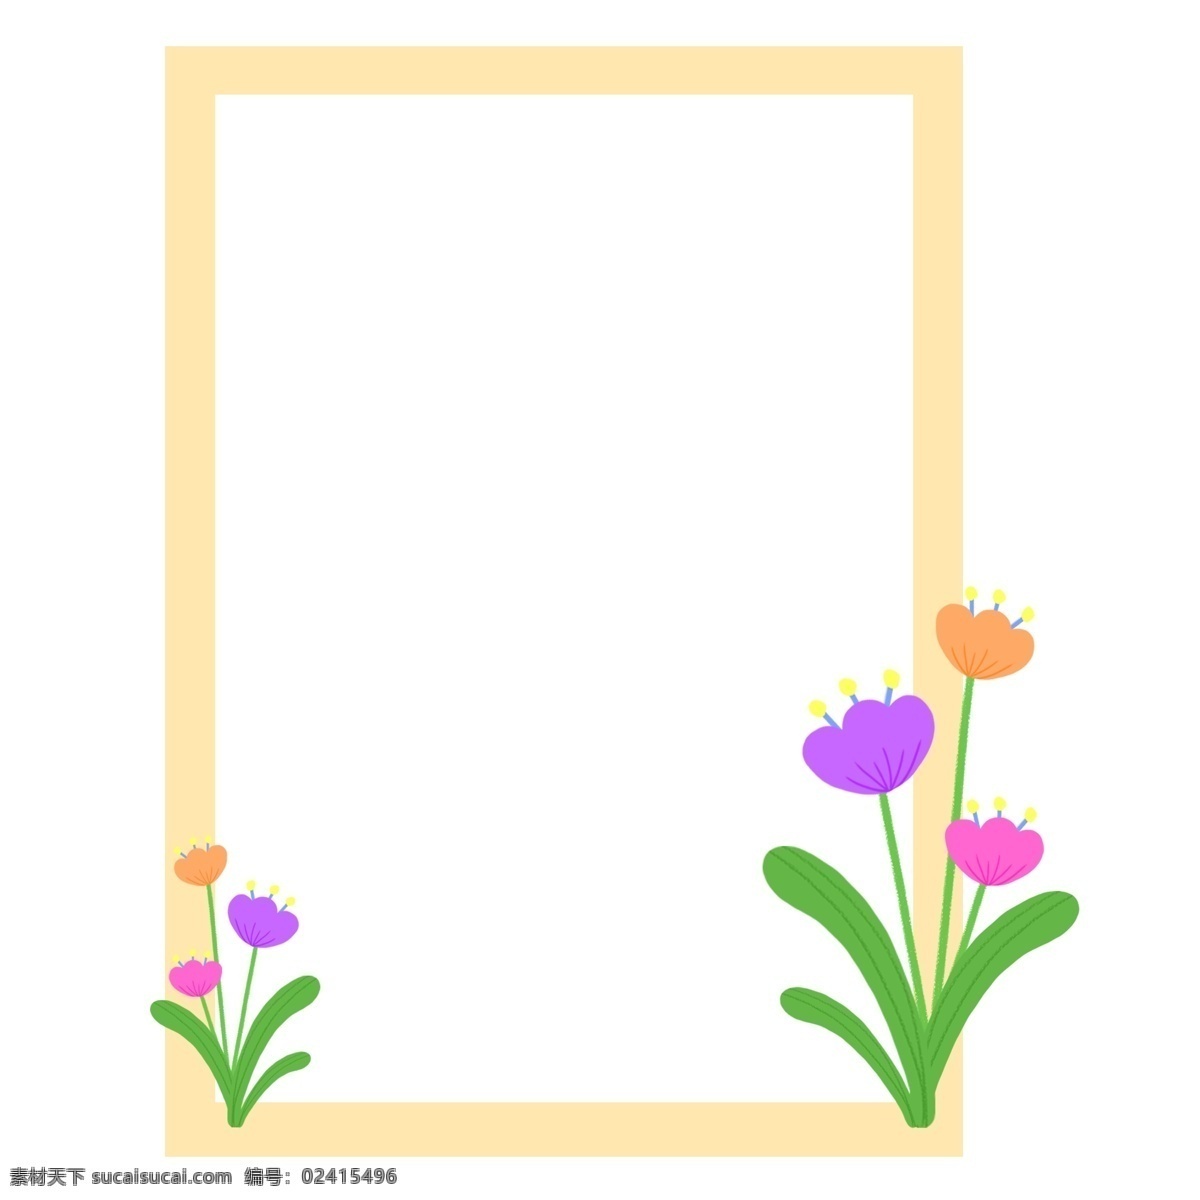 玉兰花 画板 边框 玉兰花边框 卡通边框 美丽边框 漂亮边框 小物边框 物品边框 漂亮的花朵